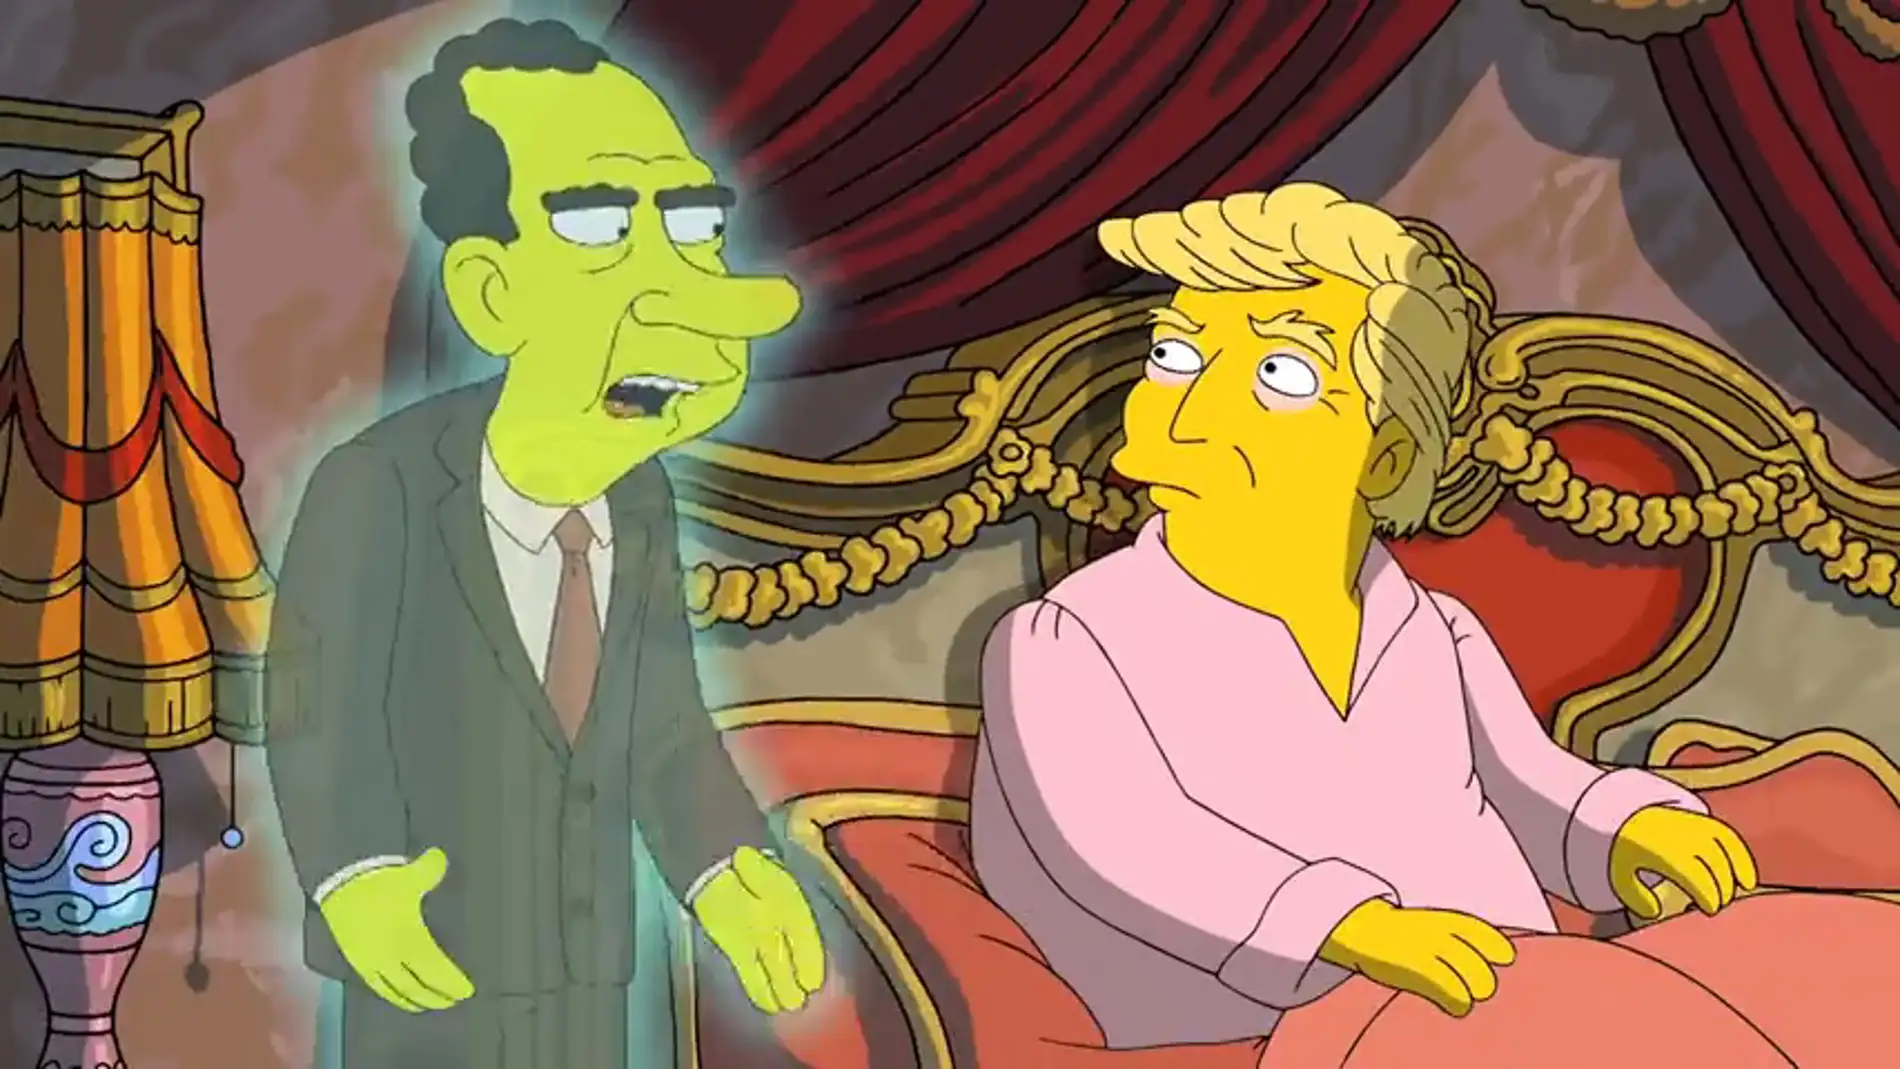 Frame 49.637764 de: Donald Trump recibe la visita del fantasma de Richard Nixon en 'Los Simpson'